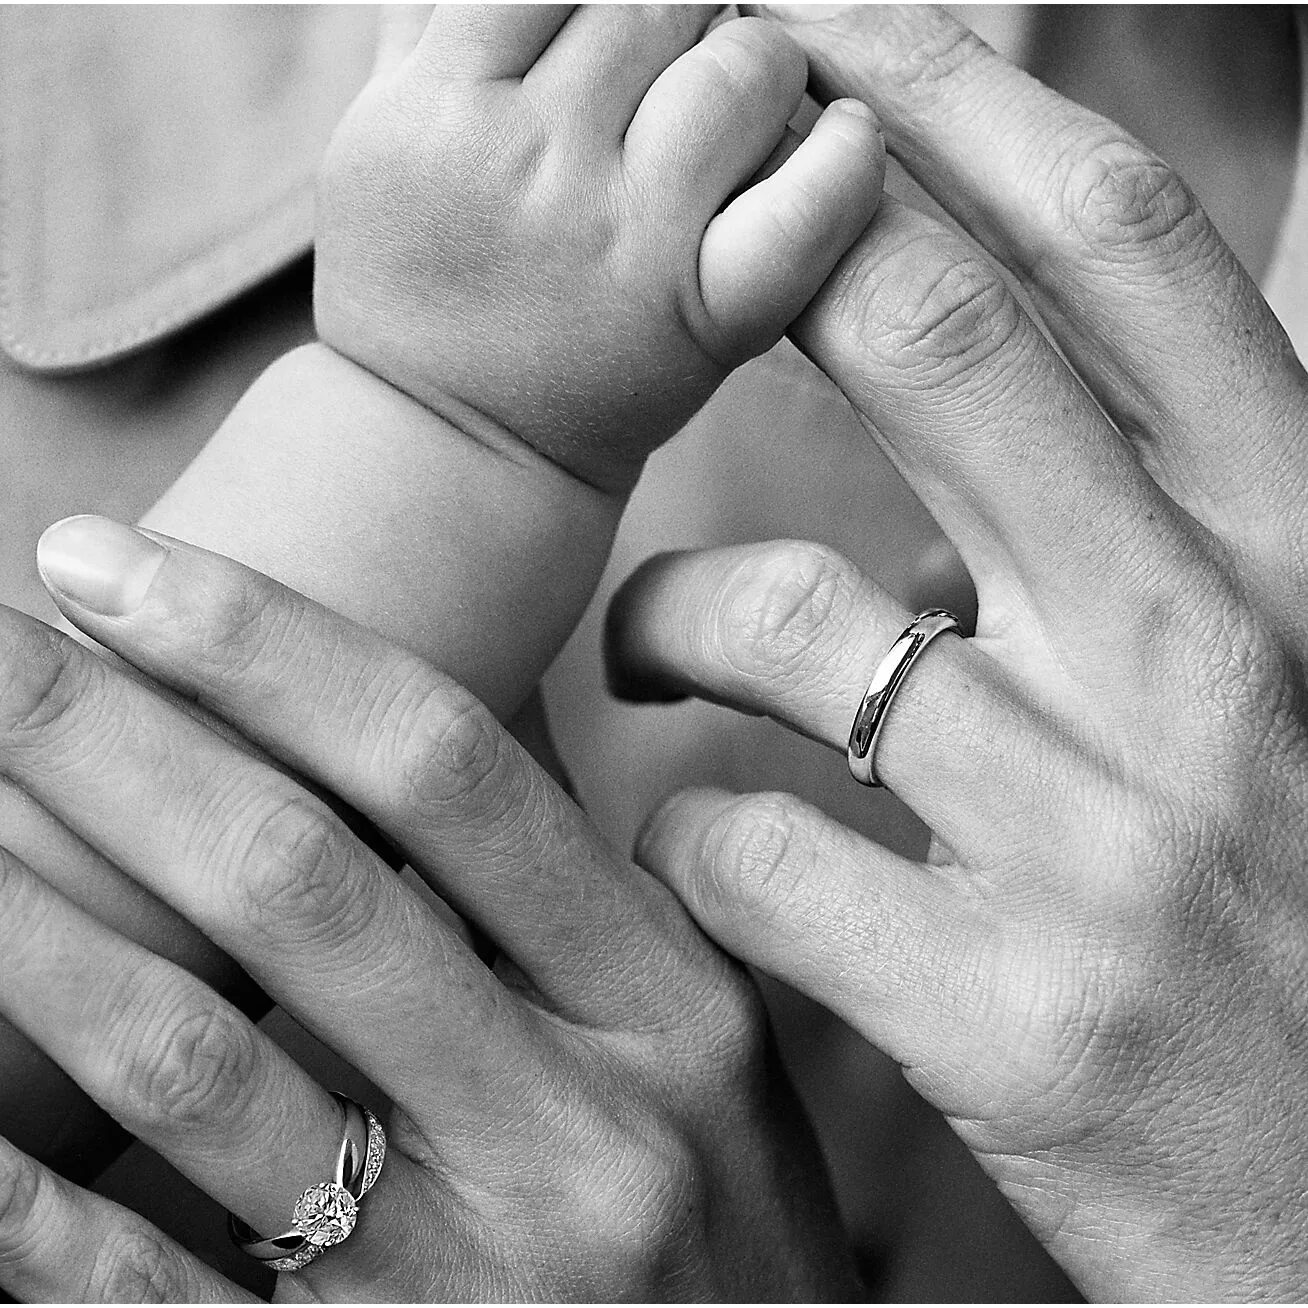 Кольца мама папа. Обручальные кольца на руках. Кольцо влюбленные. Руки влюбленных с обручальными кольцами. Руки с обручальными кольцами картинки.